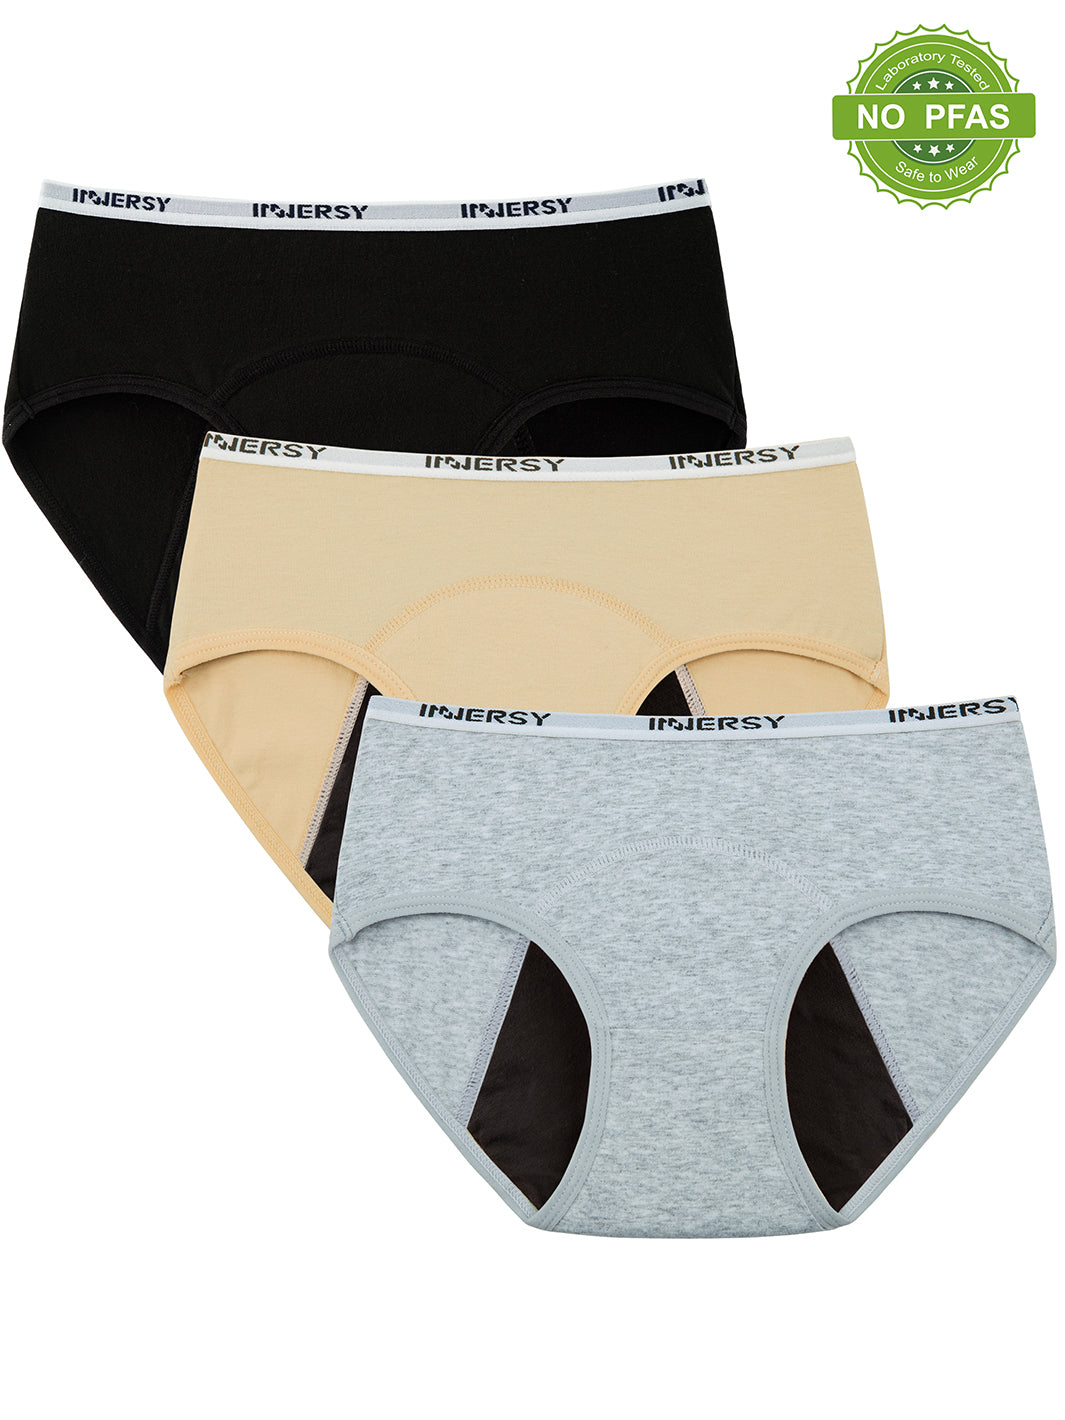 innersy, Underwear & Socks, Nwot Innersy Mens Boxers 3pairs